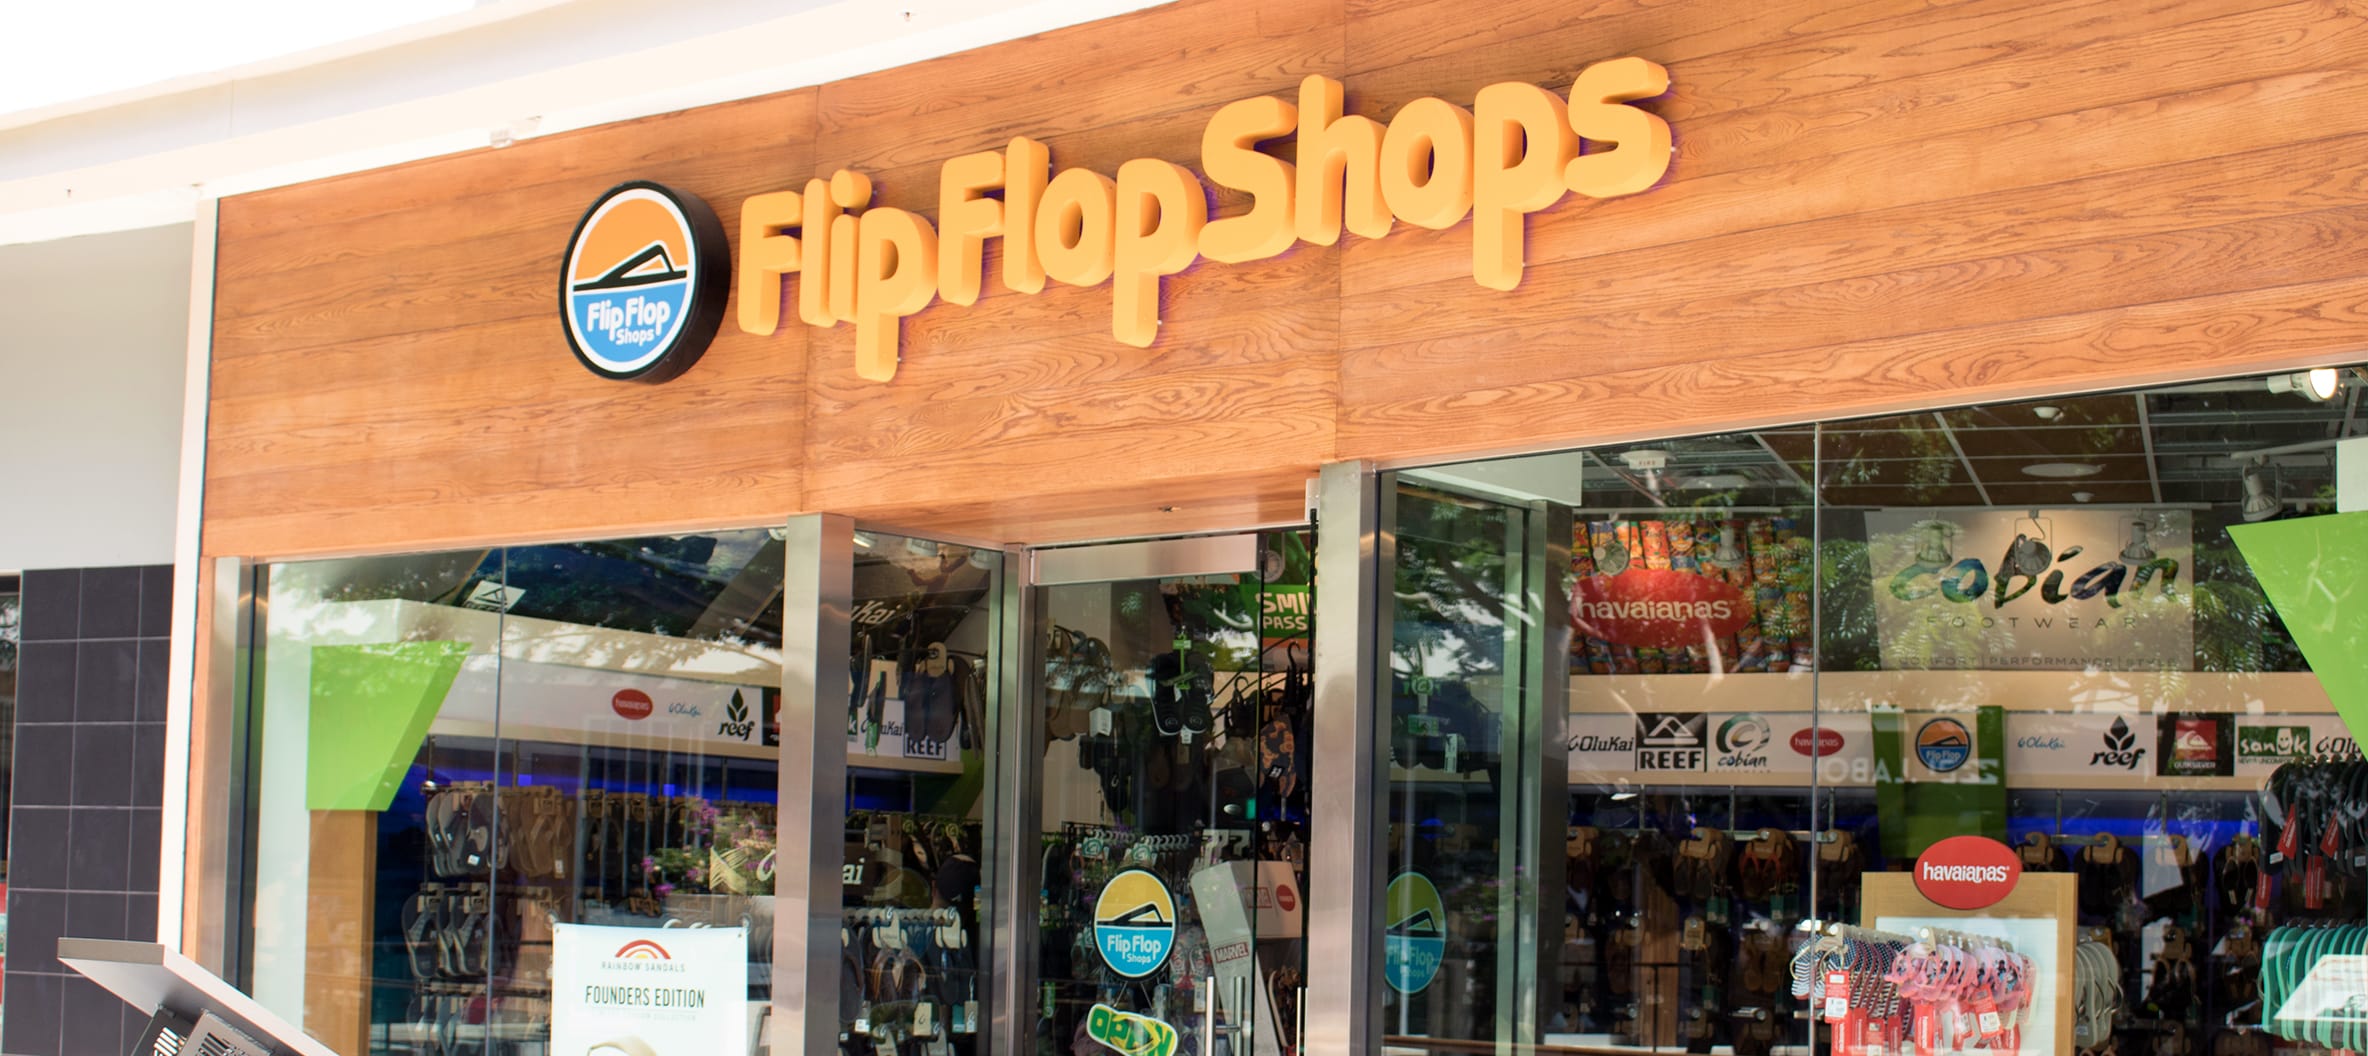 the flip flop store